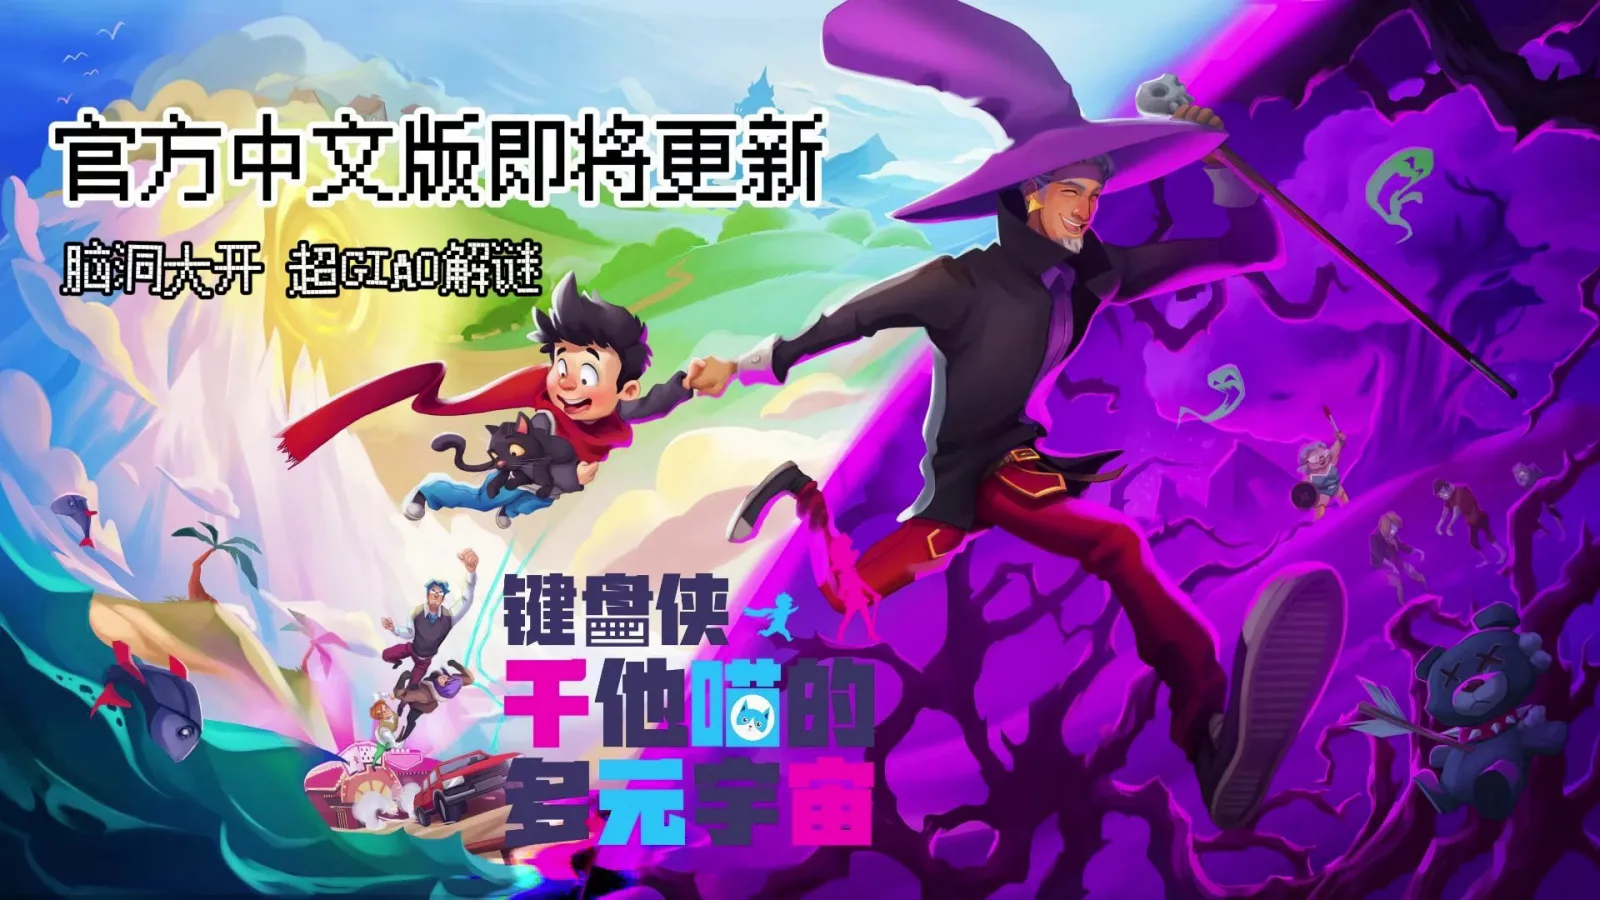 《键盘侠干他喵的多元宇宙》将于10月3日上线官方中文版游戏